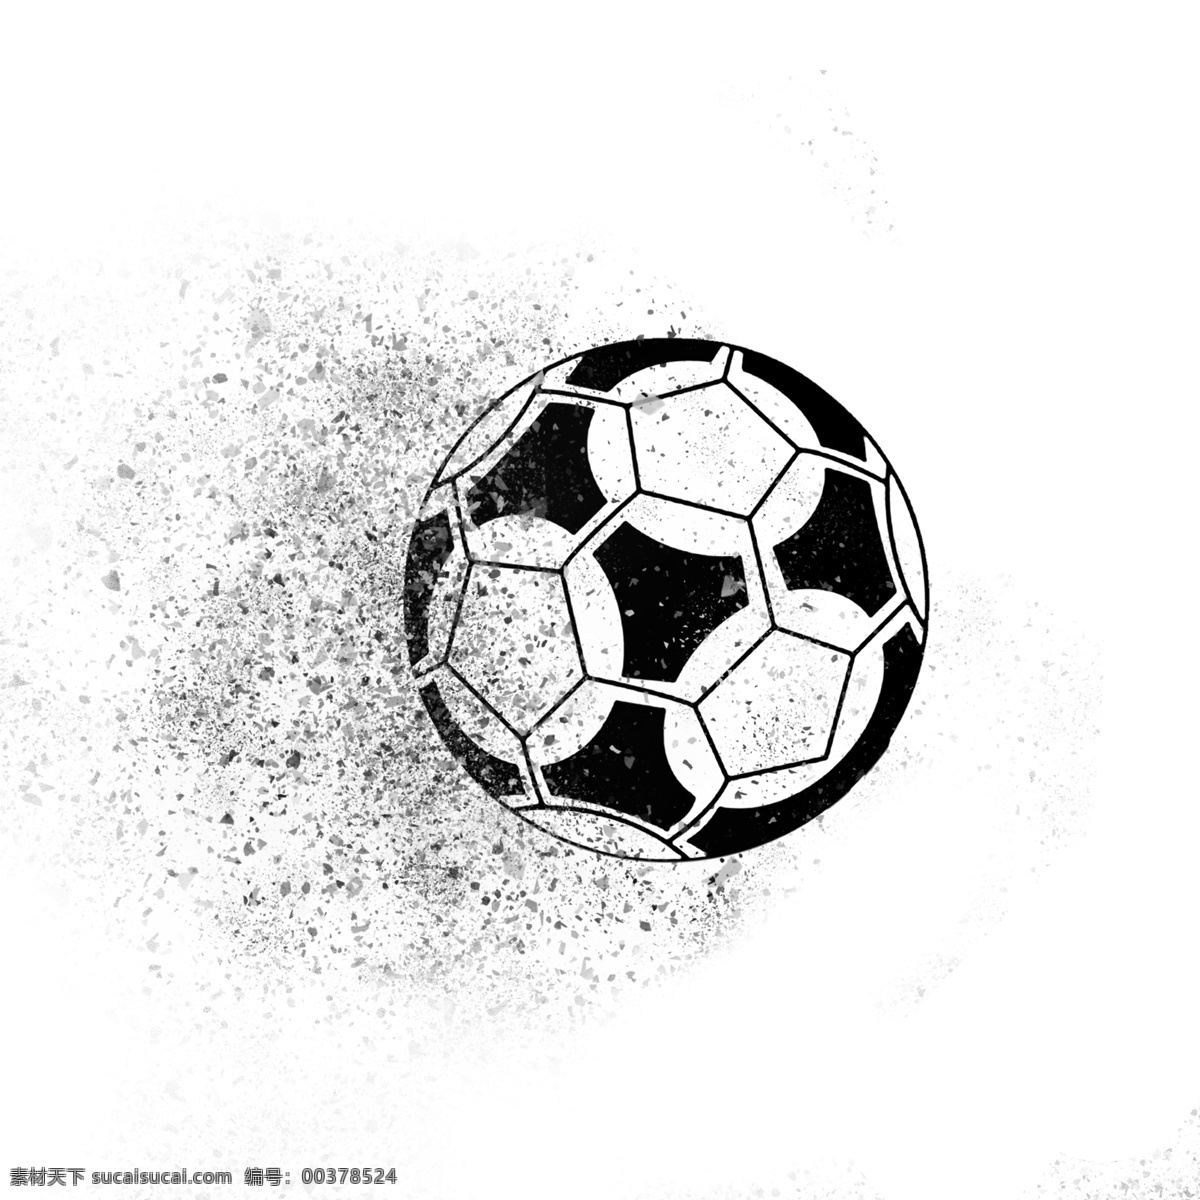 足球 黑白 大气 时尚 世界杯 碎片 喷溅 2018 体育 世界 球迷 球迷节日 发射